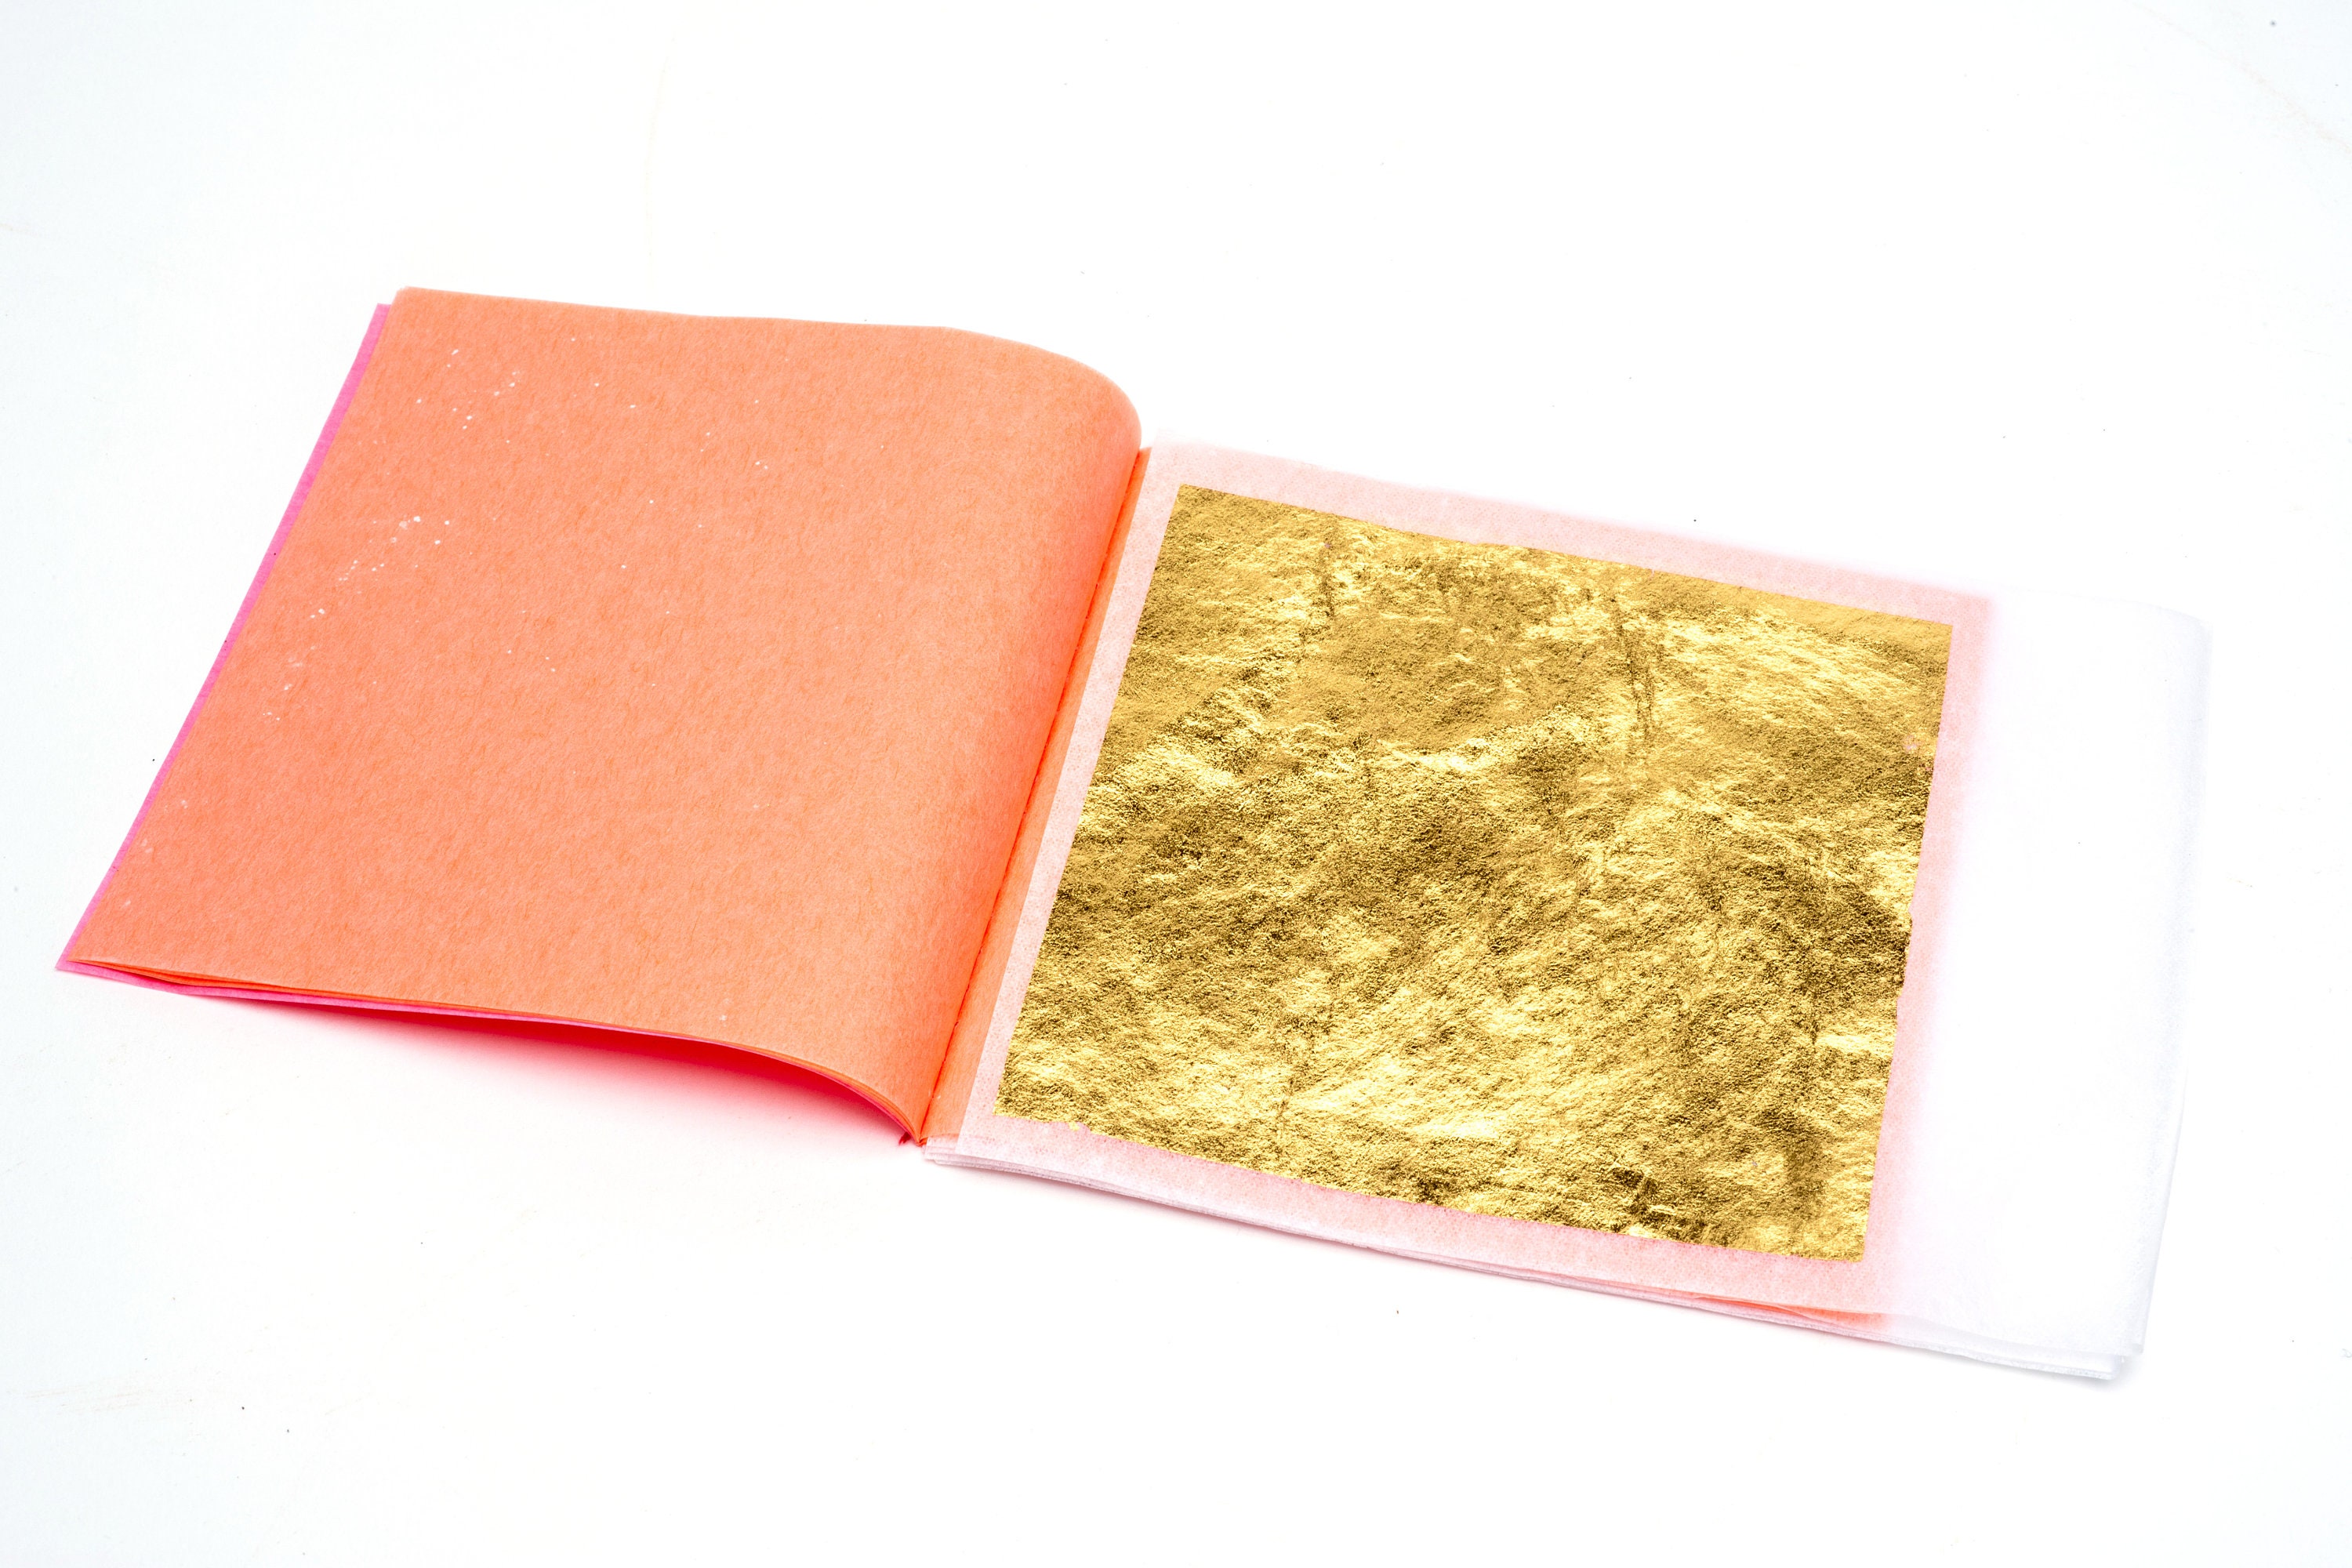 Hard Press Transfer Edible Gold Sheets - 24K Gold Foil Leaf for Cakes